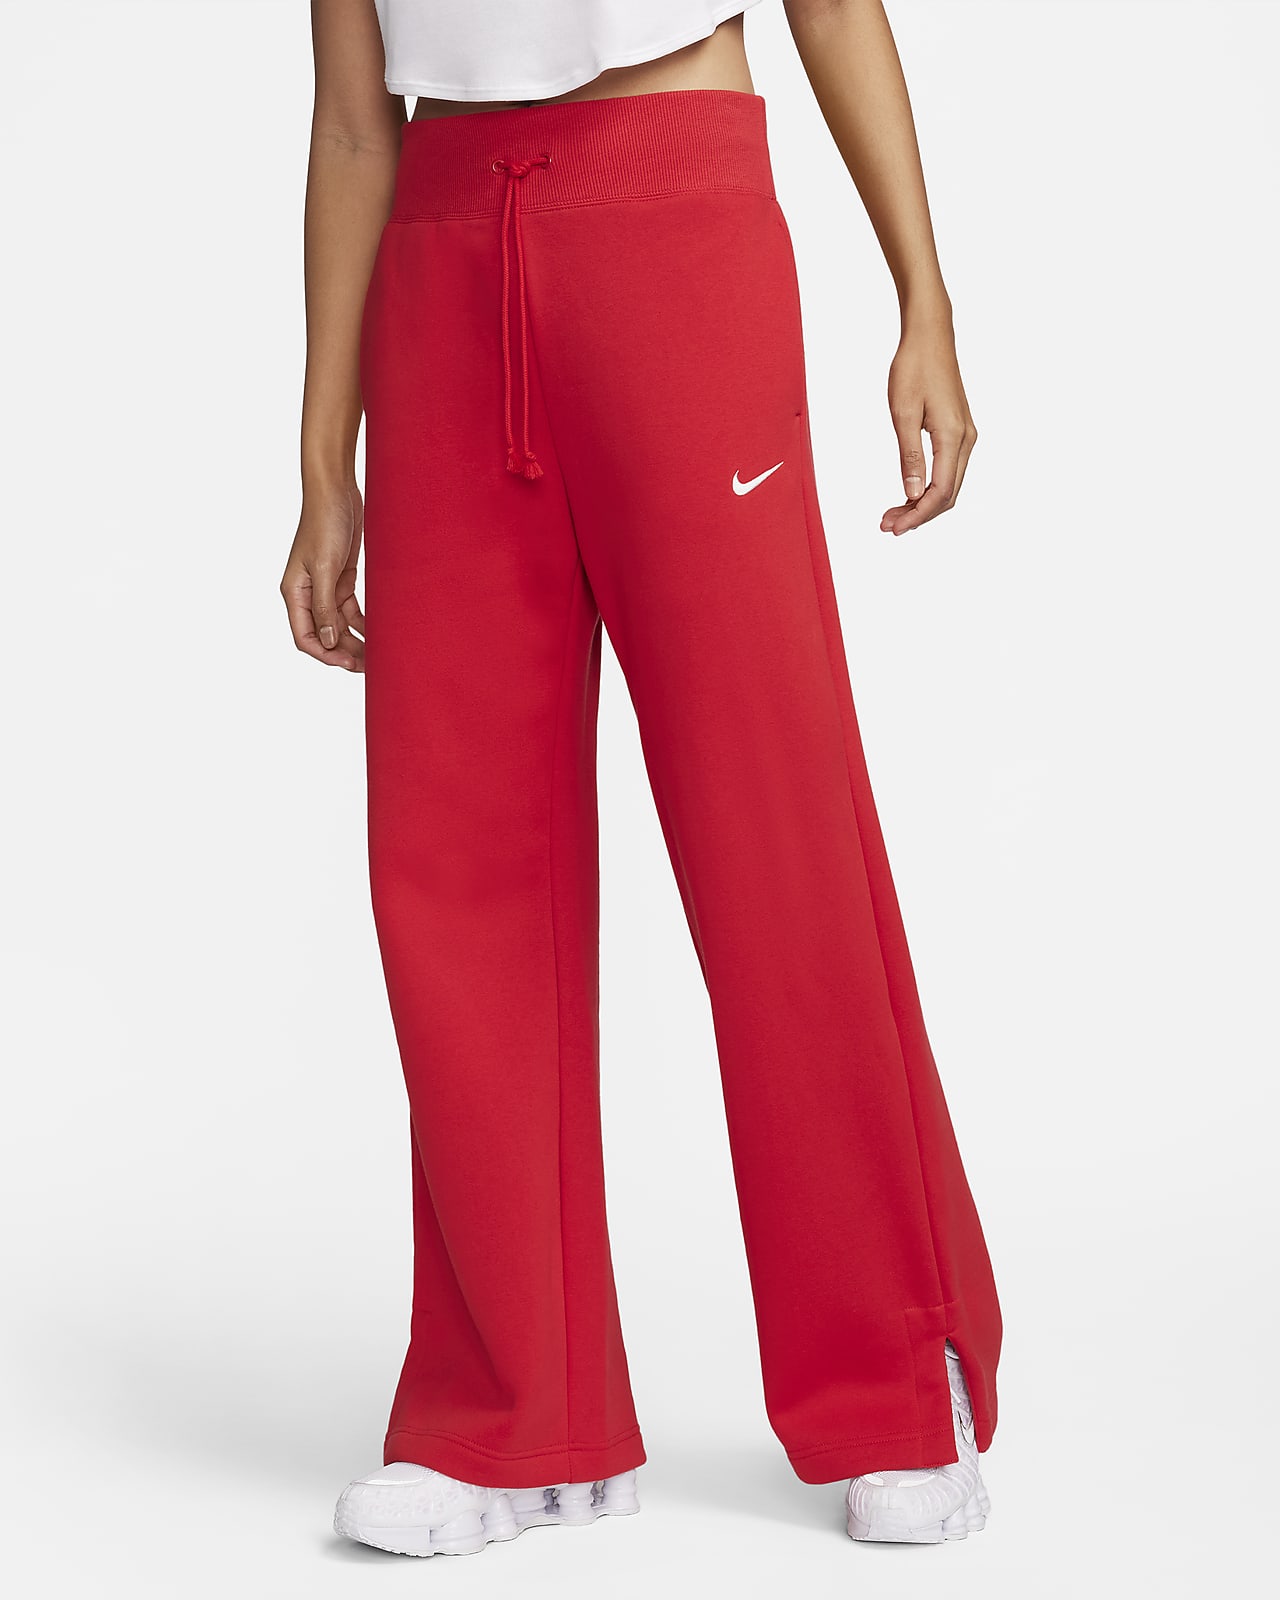 Nike Sportswear Phoenix Fleece magas derekú, széles szárú női polár melegítőnadrág